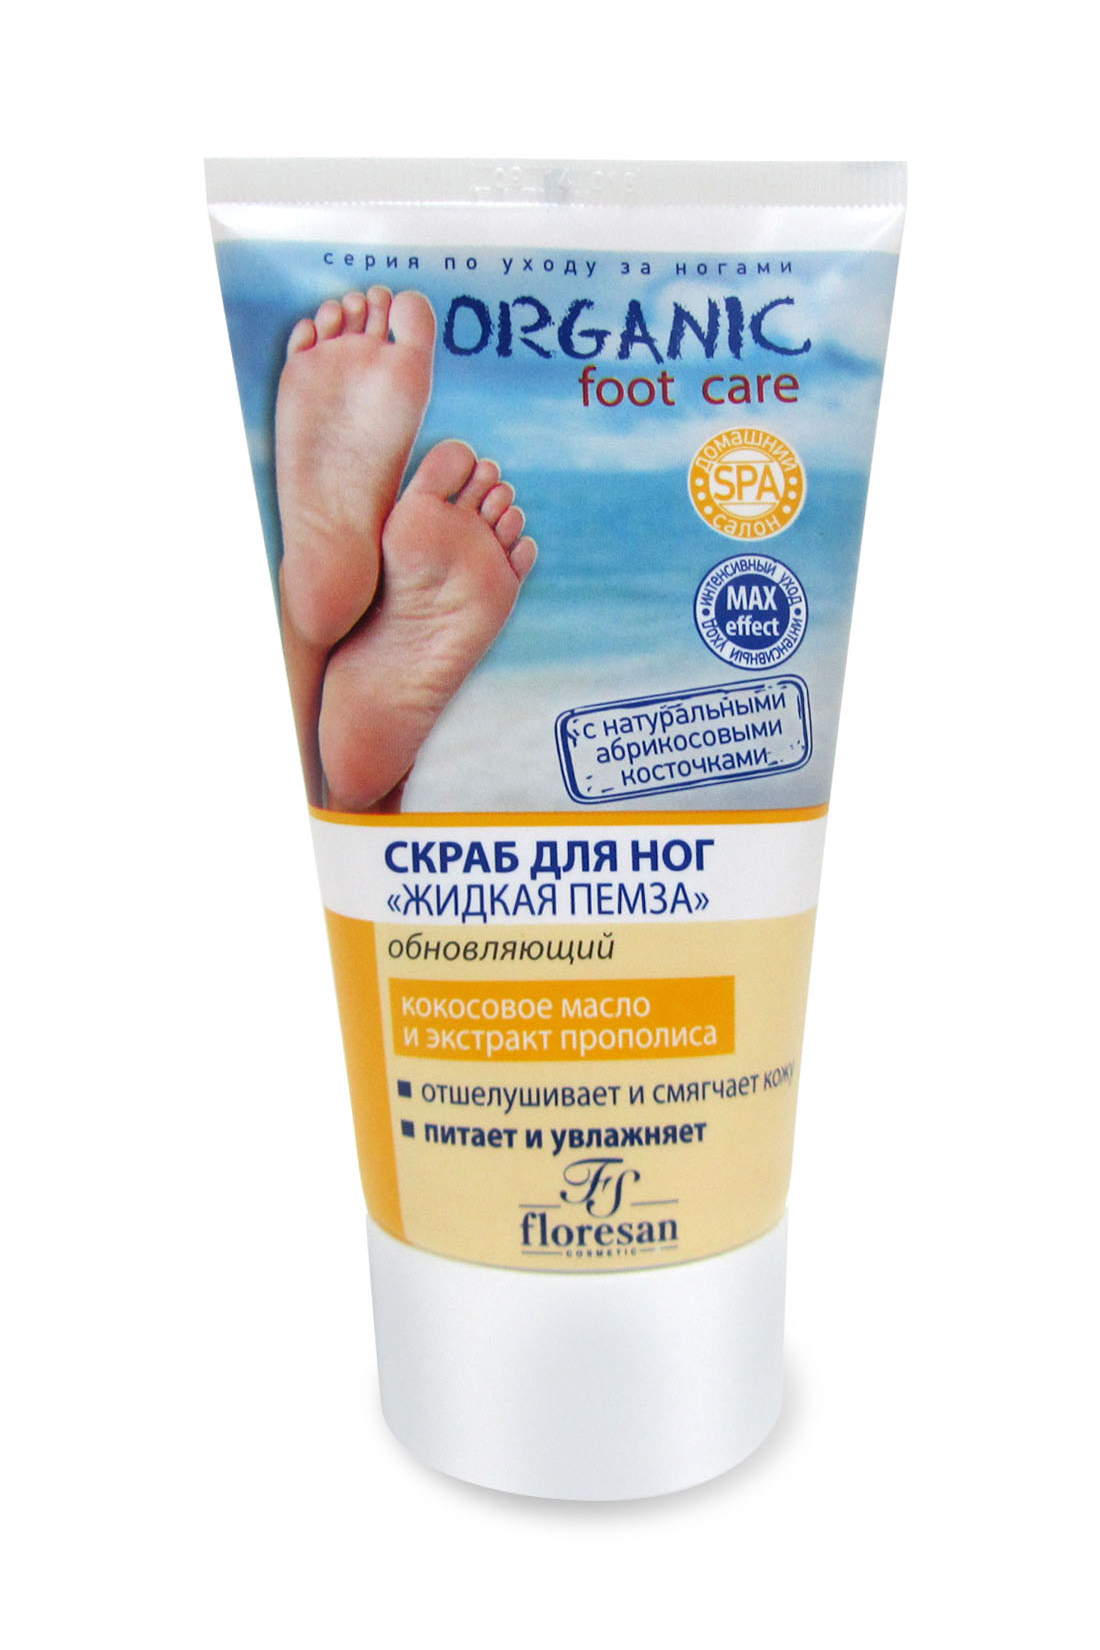 100 пяток. Floresan ф-453 Organic foot Care скраб д/ног 150мл жидкая пемза/обновляющий. Флоресан Organic foot Care. Бальзам для ног с мочевиной Флоресан.